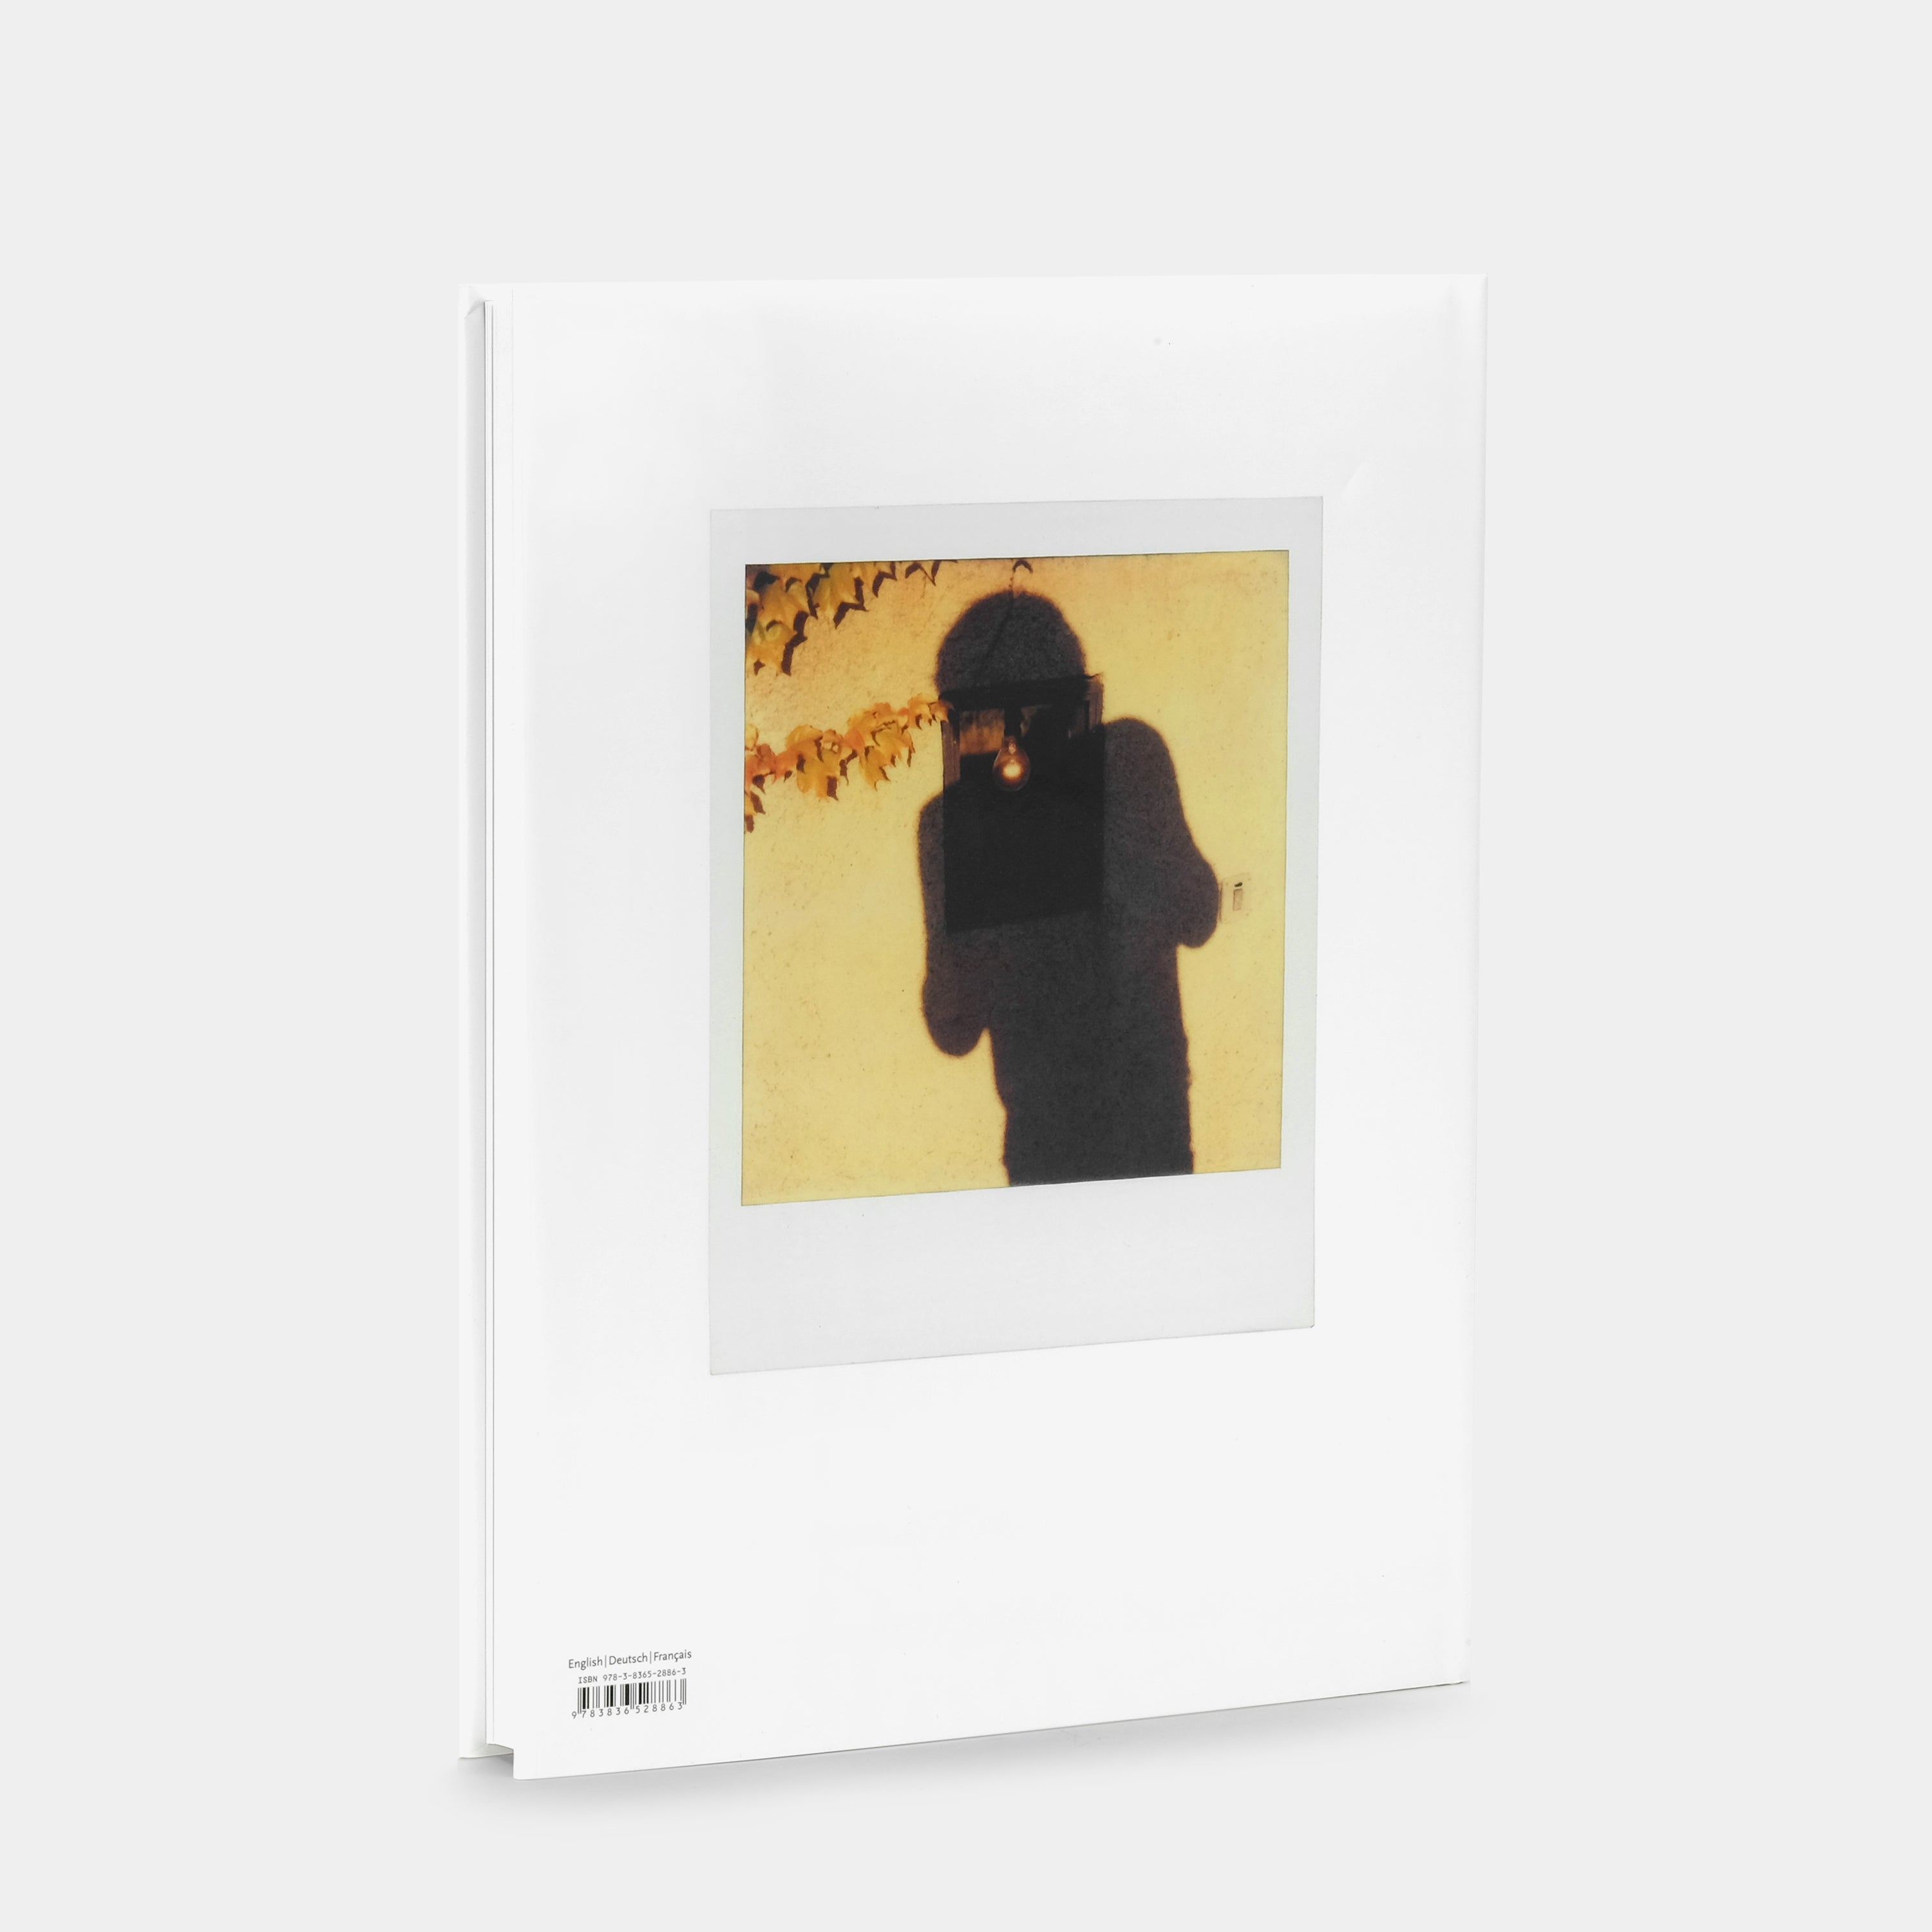 Helmut Newton: Polaroids Taschen Book